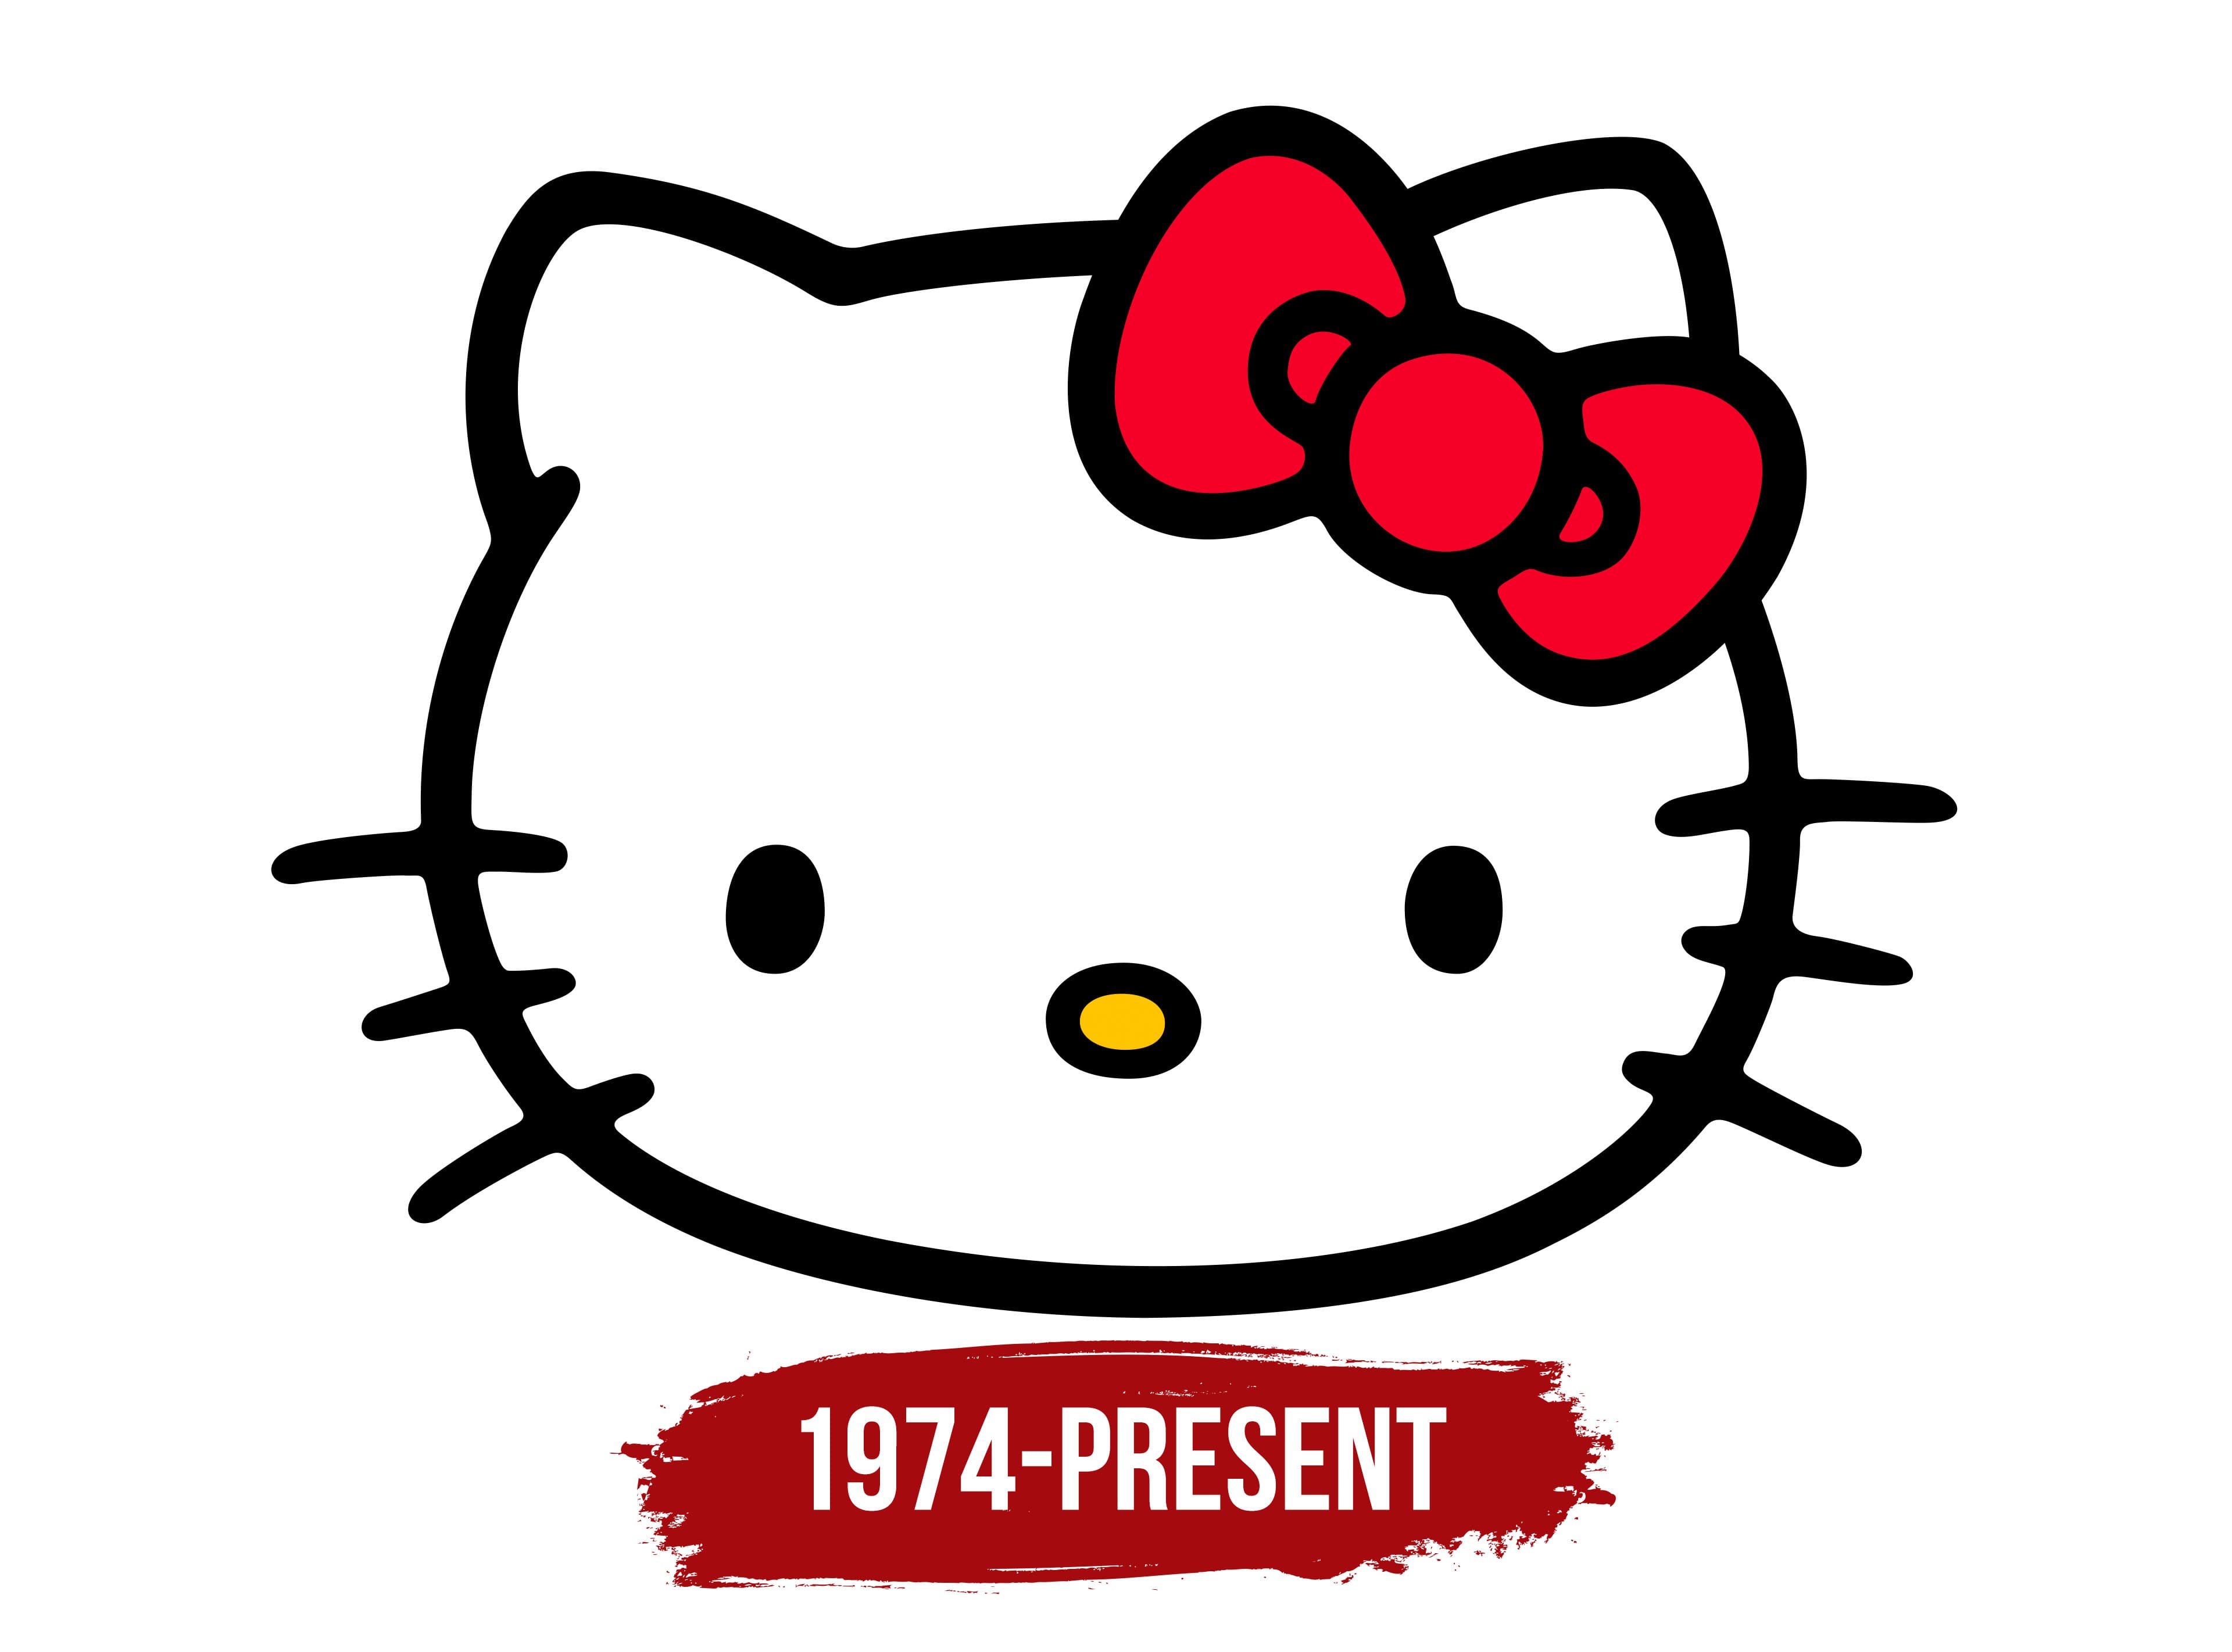 The History of Hello Kitty